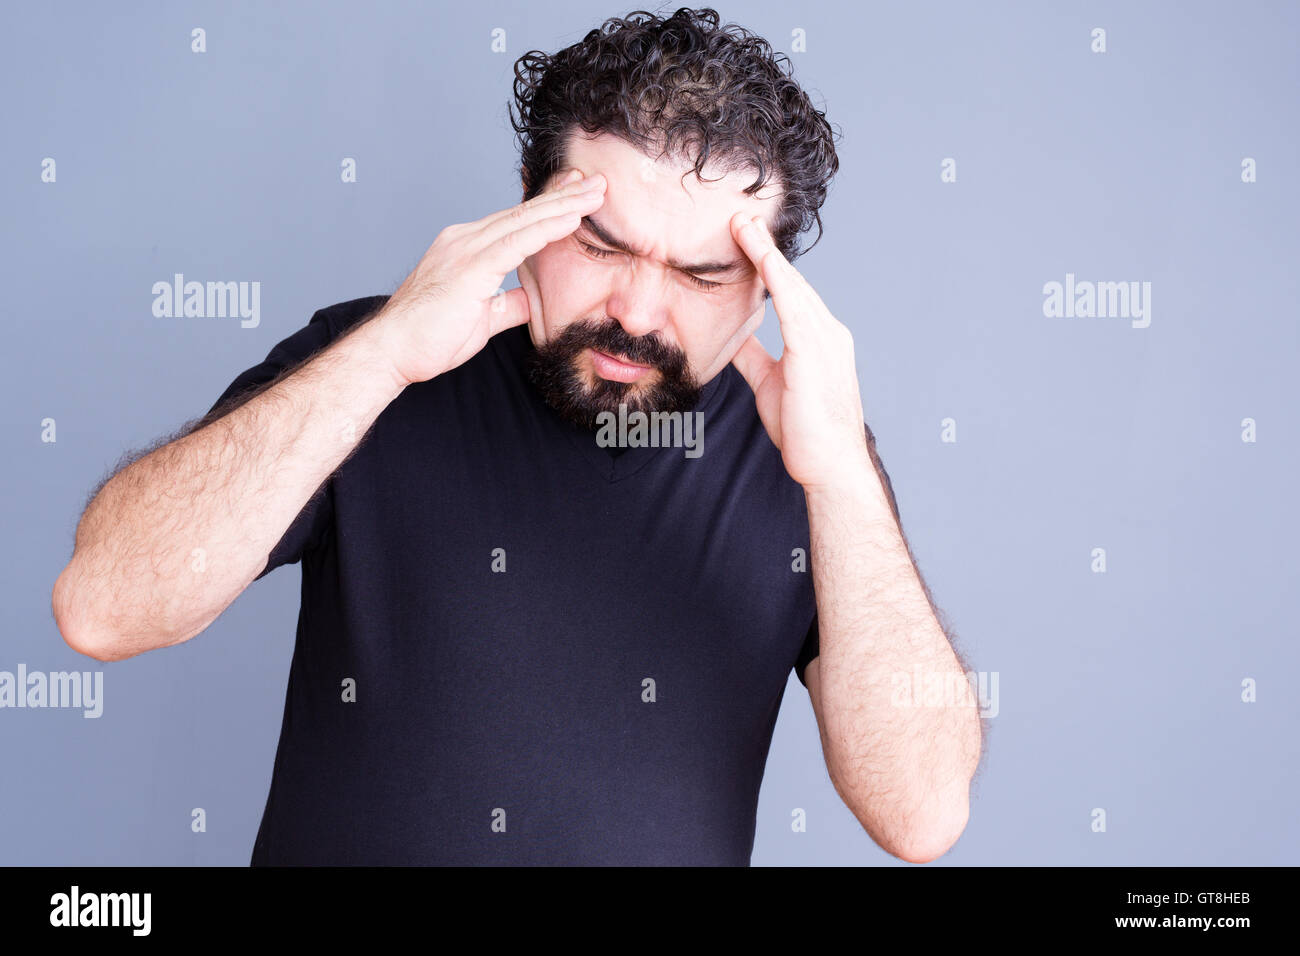 Surchargés de travail unique homme portant barbe frotter son front dans la douleur comme si souffrant de maux de tête ou de stress sur fond gris Banque D'Images